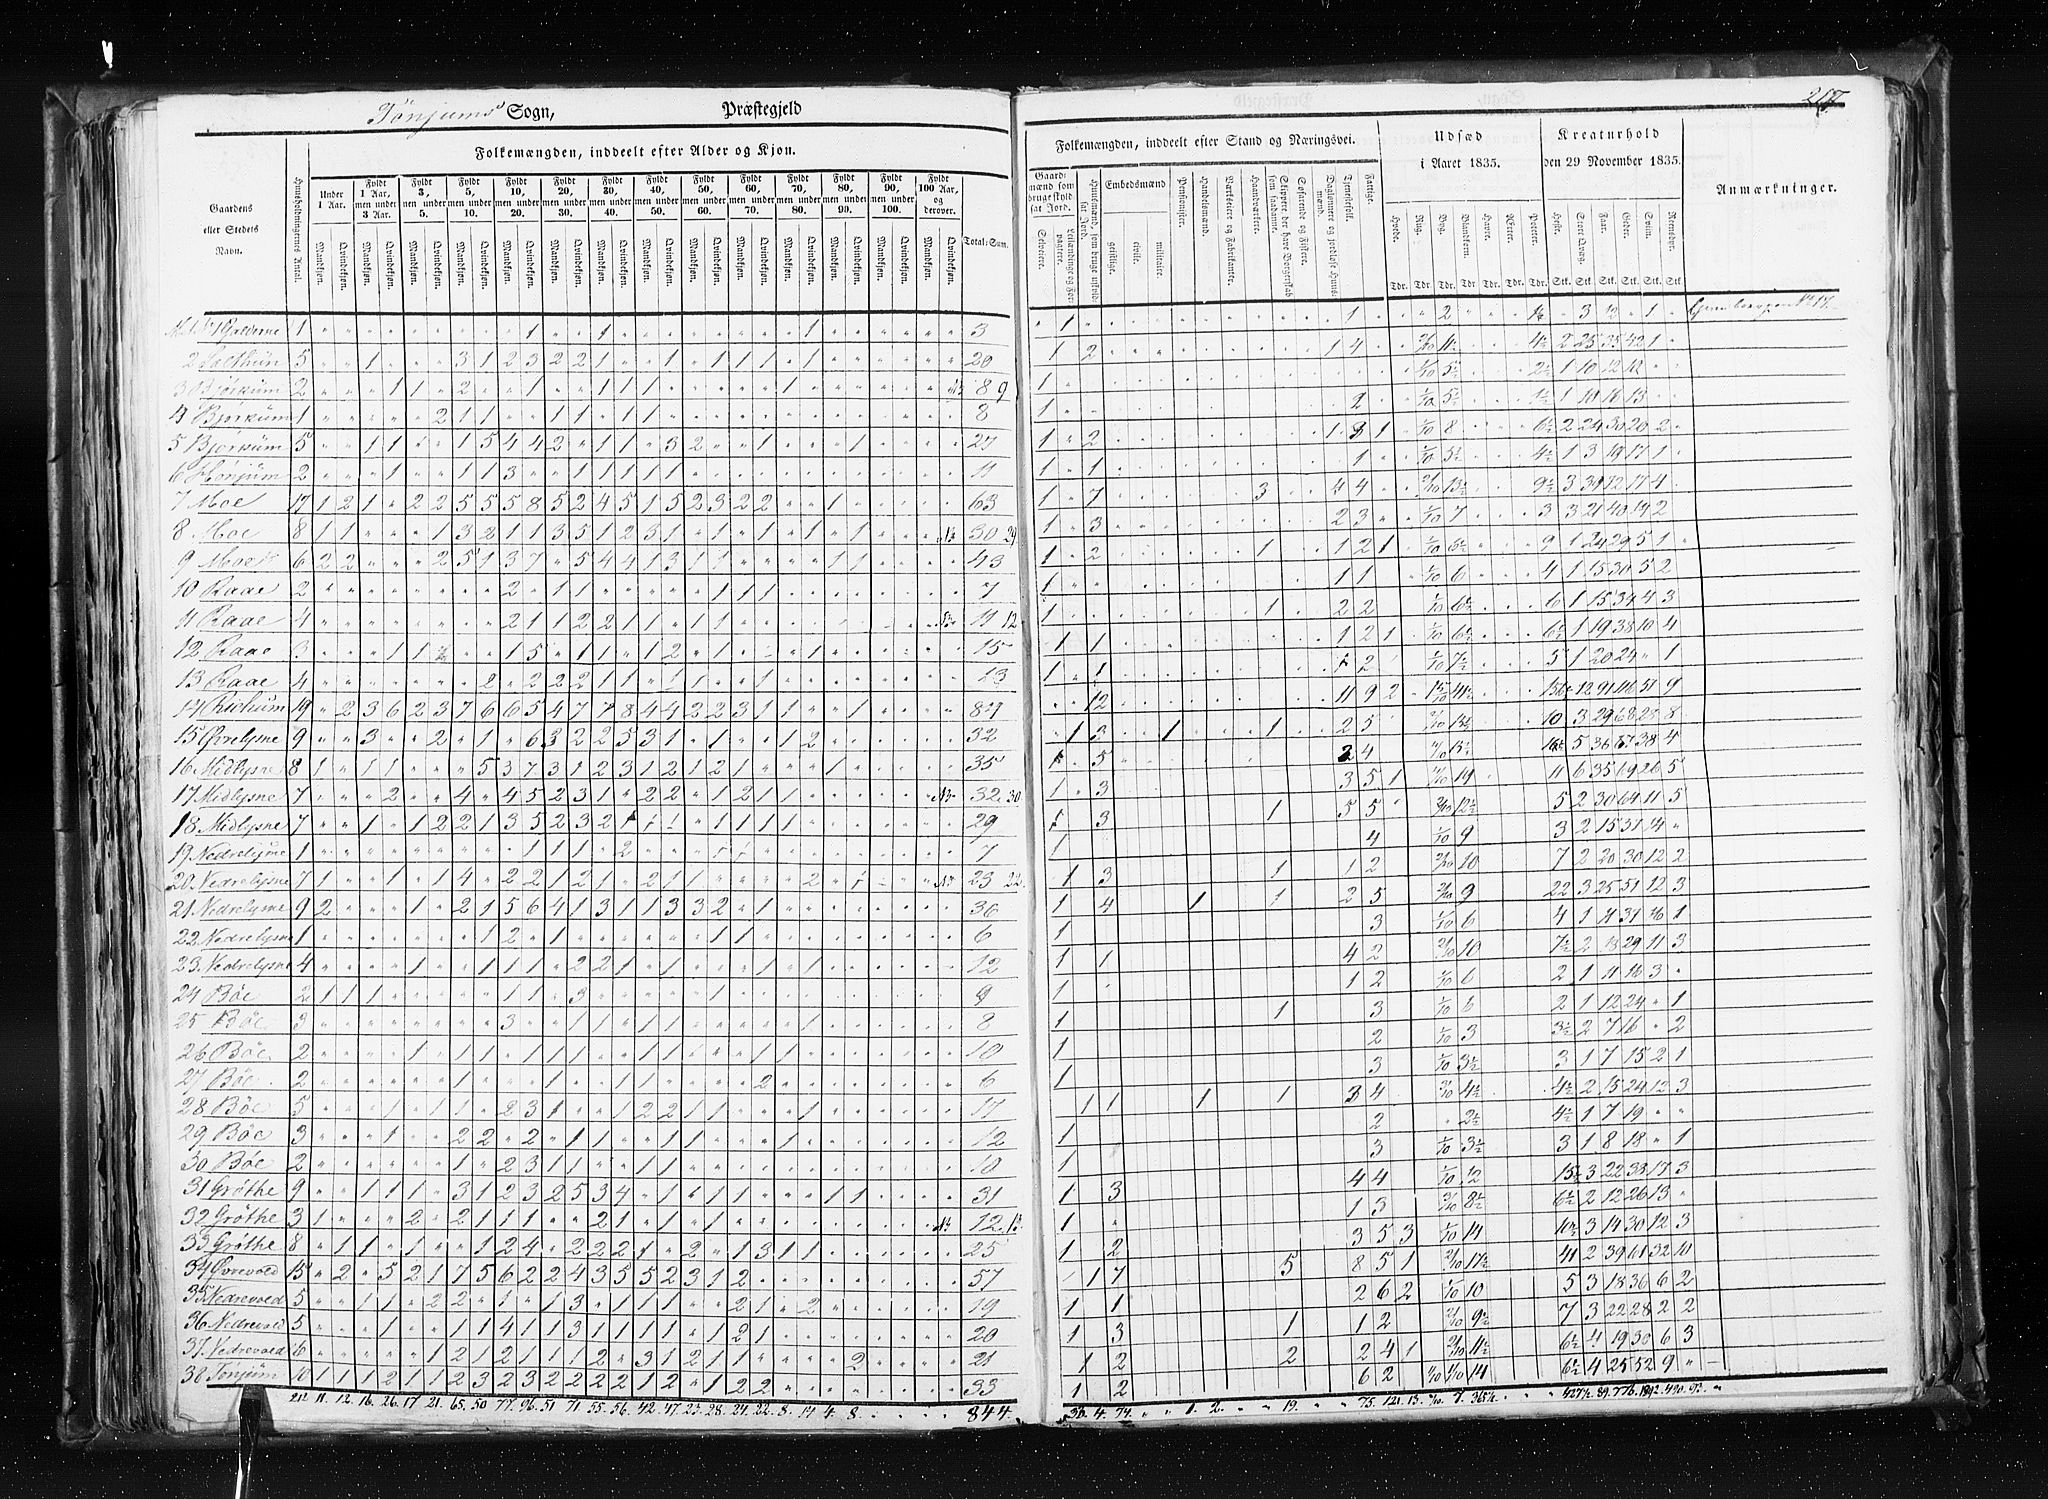 RA, Census 1835, vol. 7: Søndre Bergenhus amt og Nordre Bergenhus amt, 1835, p. 217